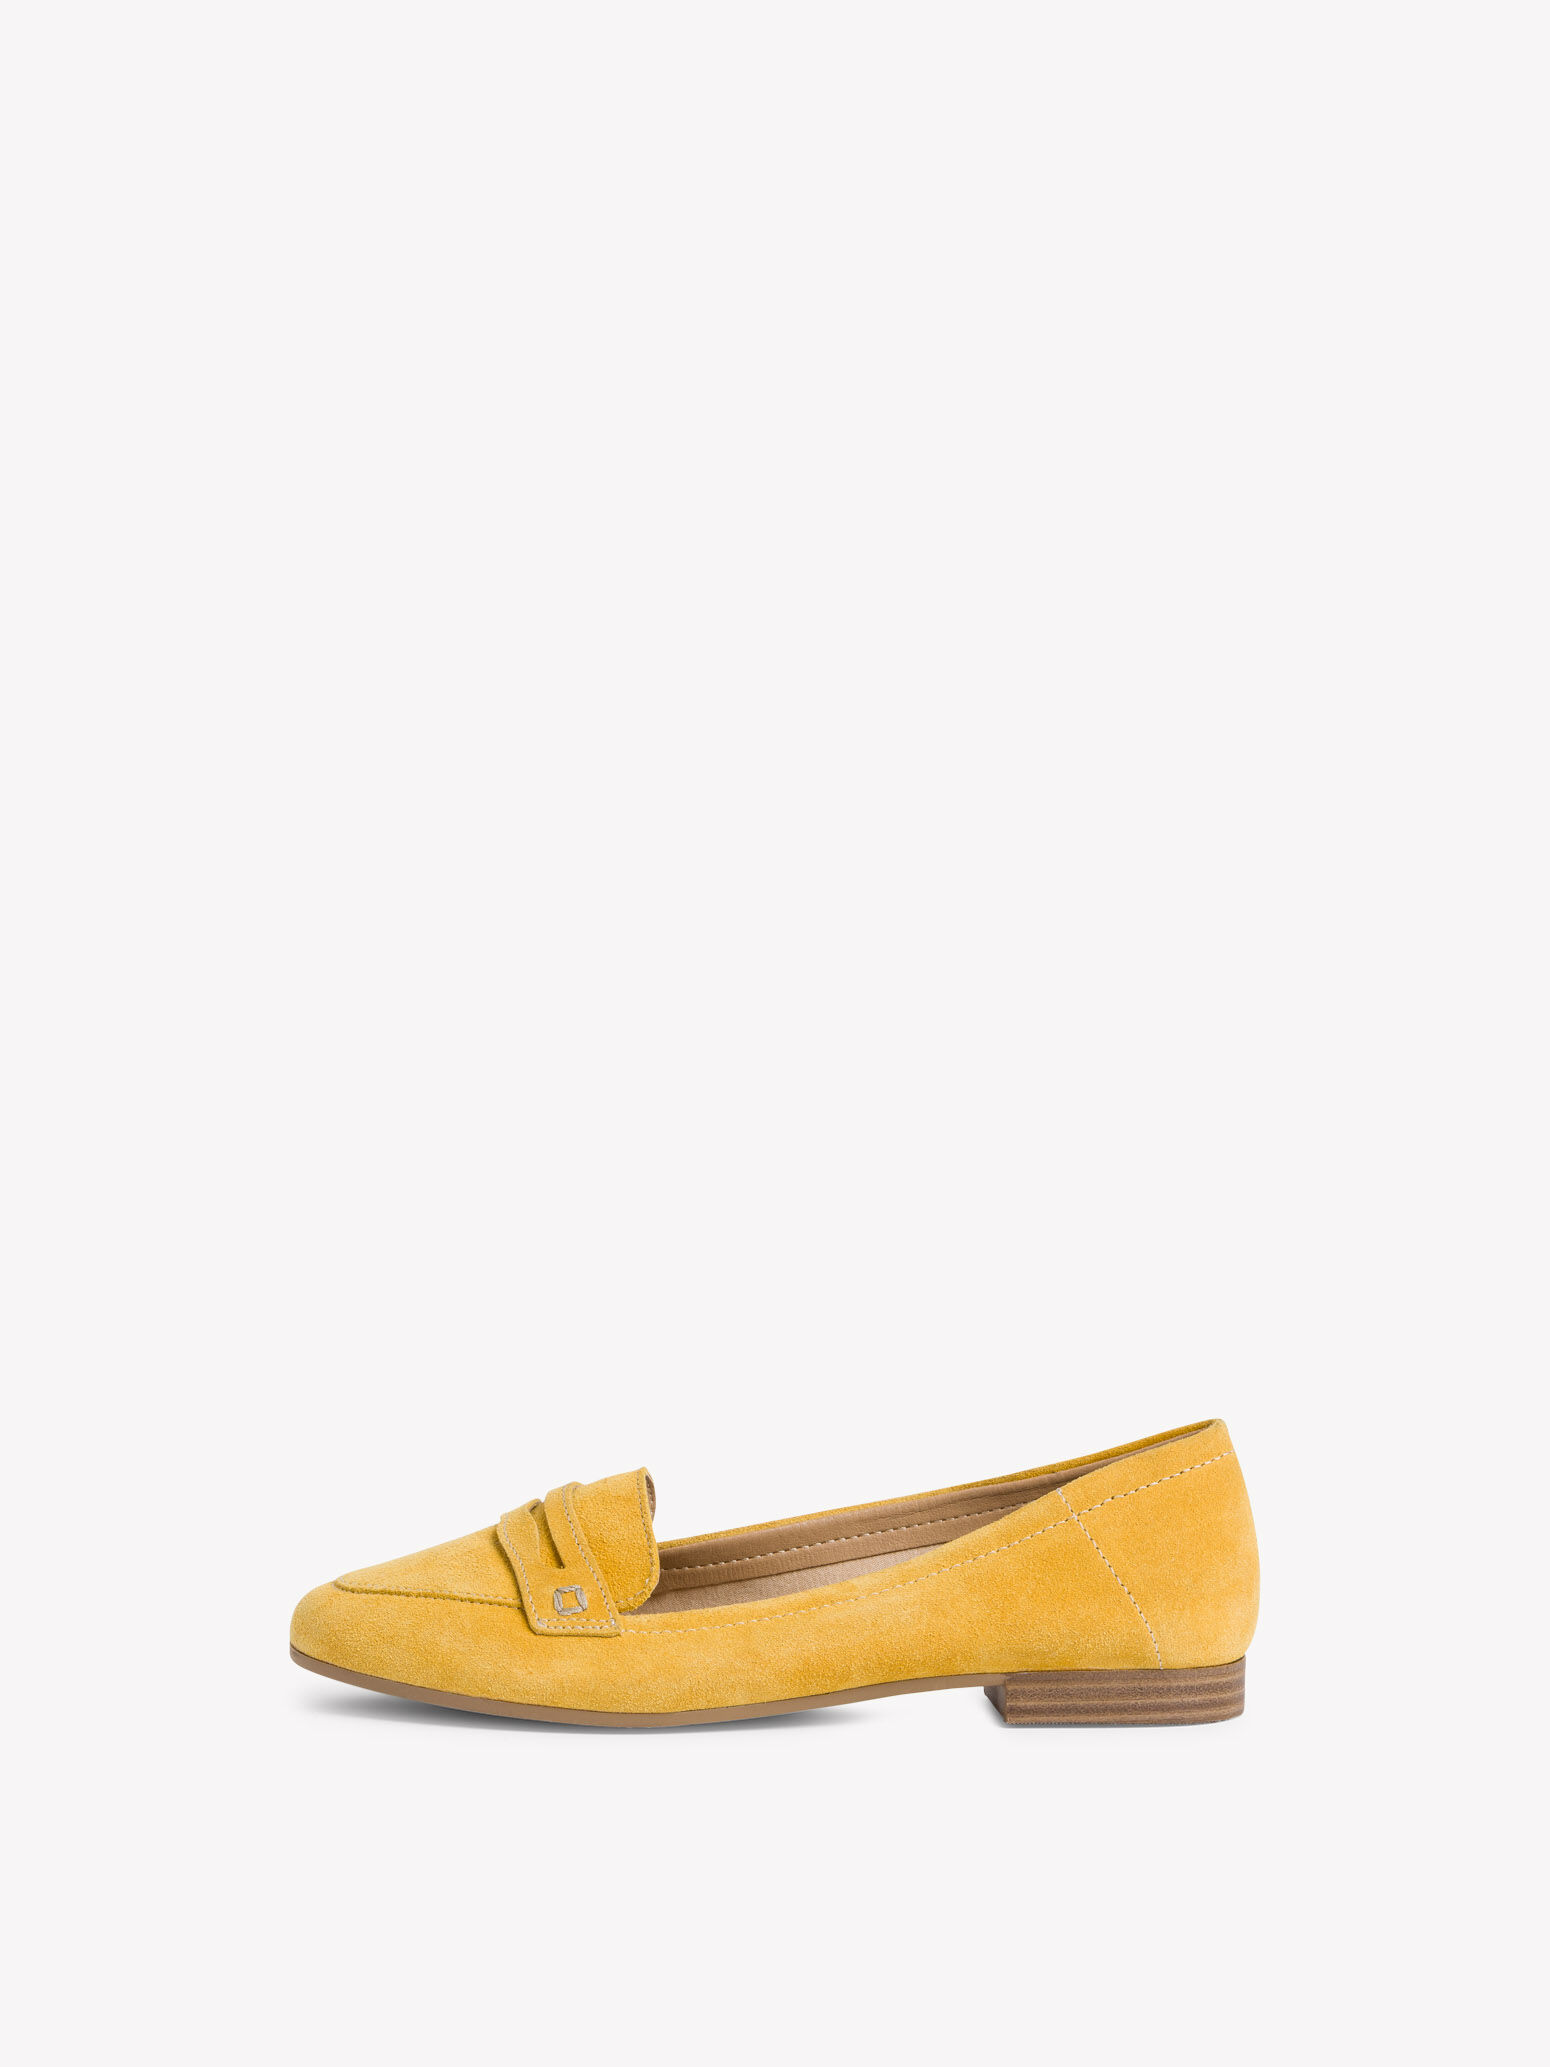 tamaris yellow shoes